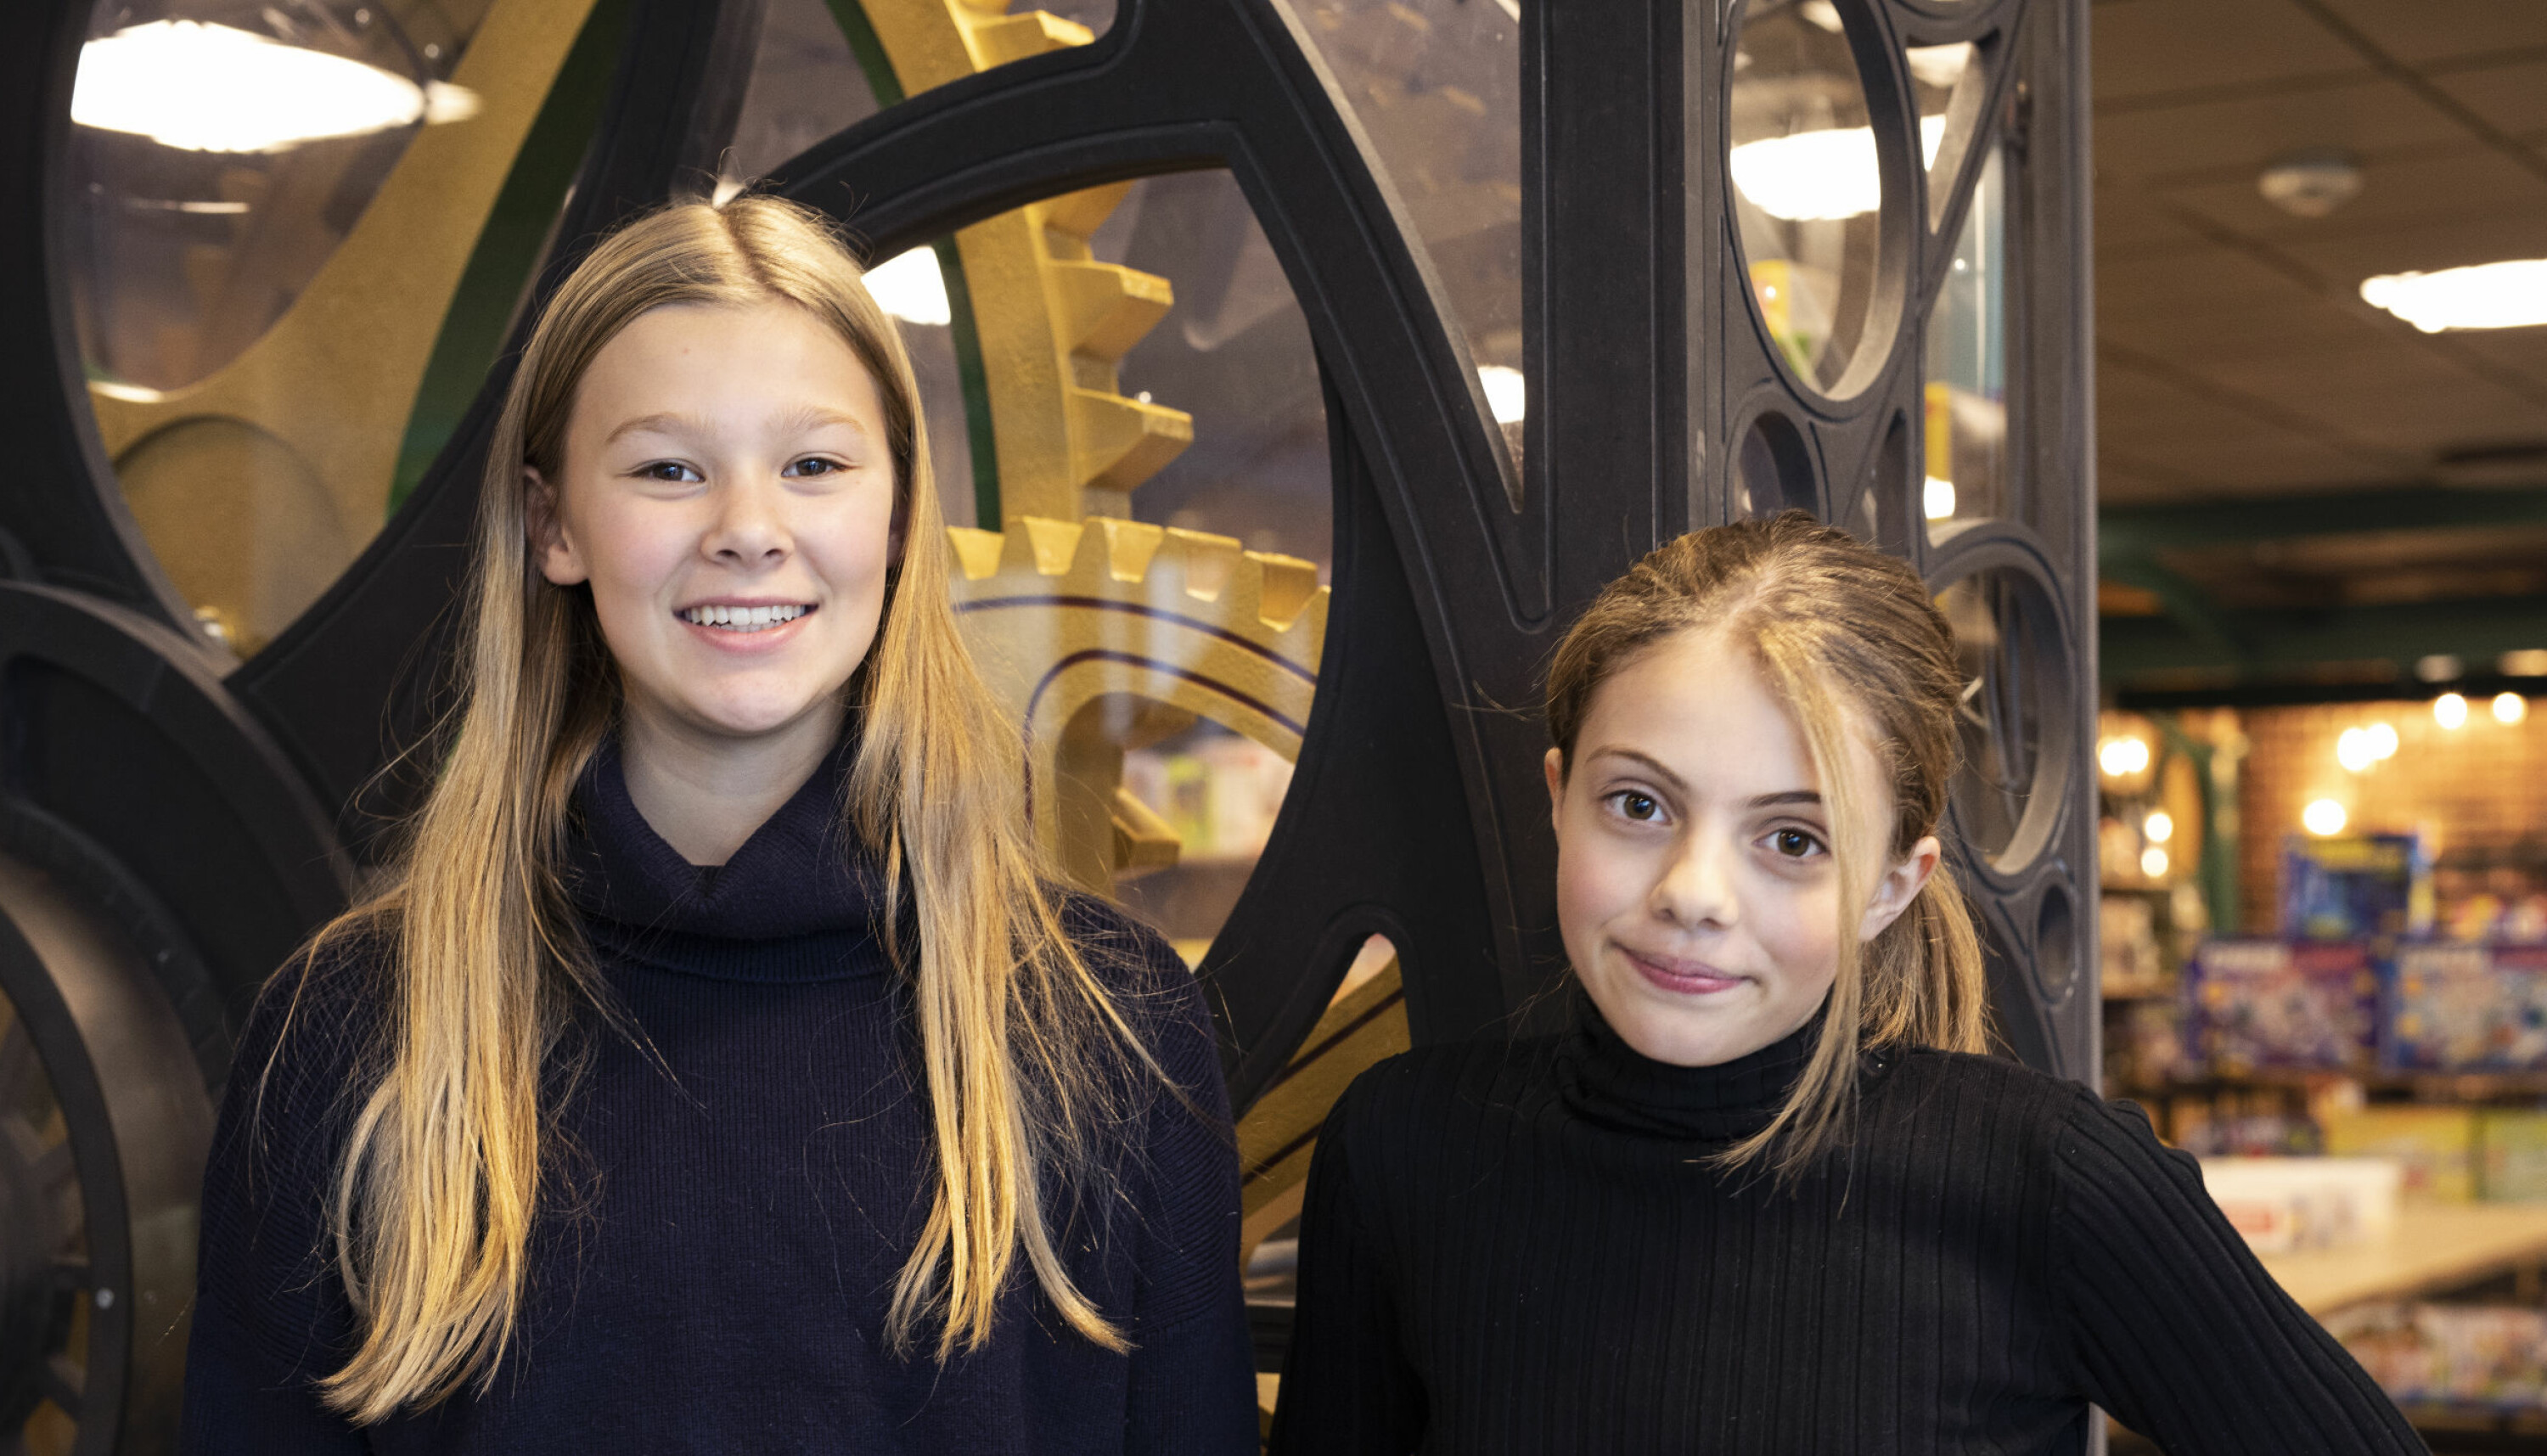 Det er veldig gøy her. Vi får gjøre flere eksperimenter enn på skolen, sier Elina (12). Tale (11, til høyre) er også talentsenteret på Teknisk museum. Foto: Maja Ljungberg Bjaaland